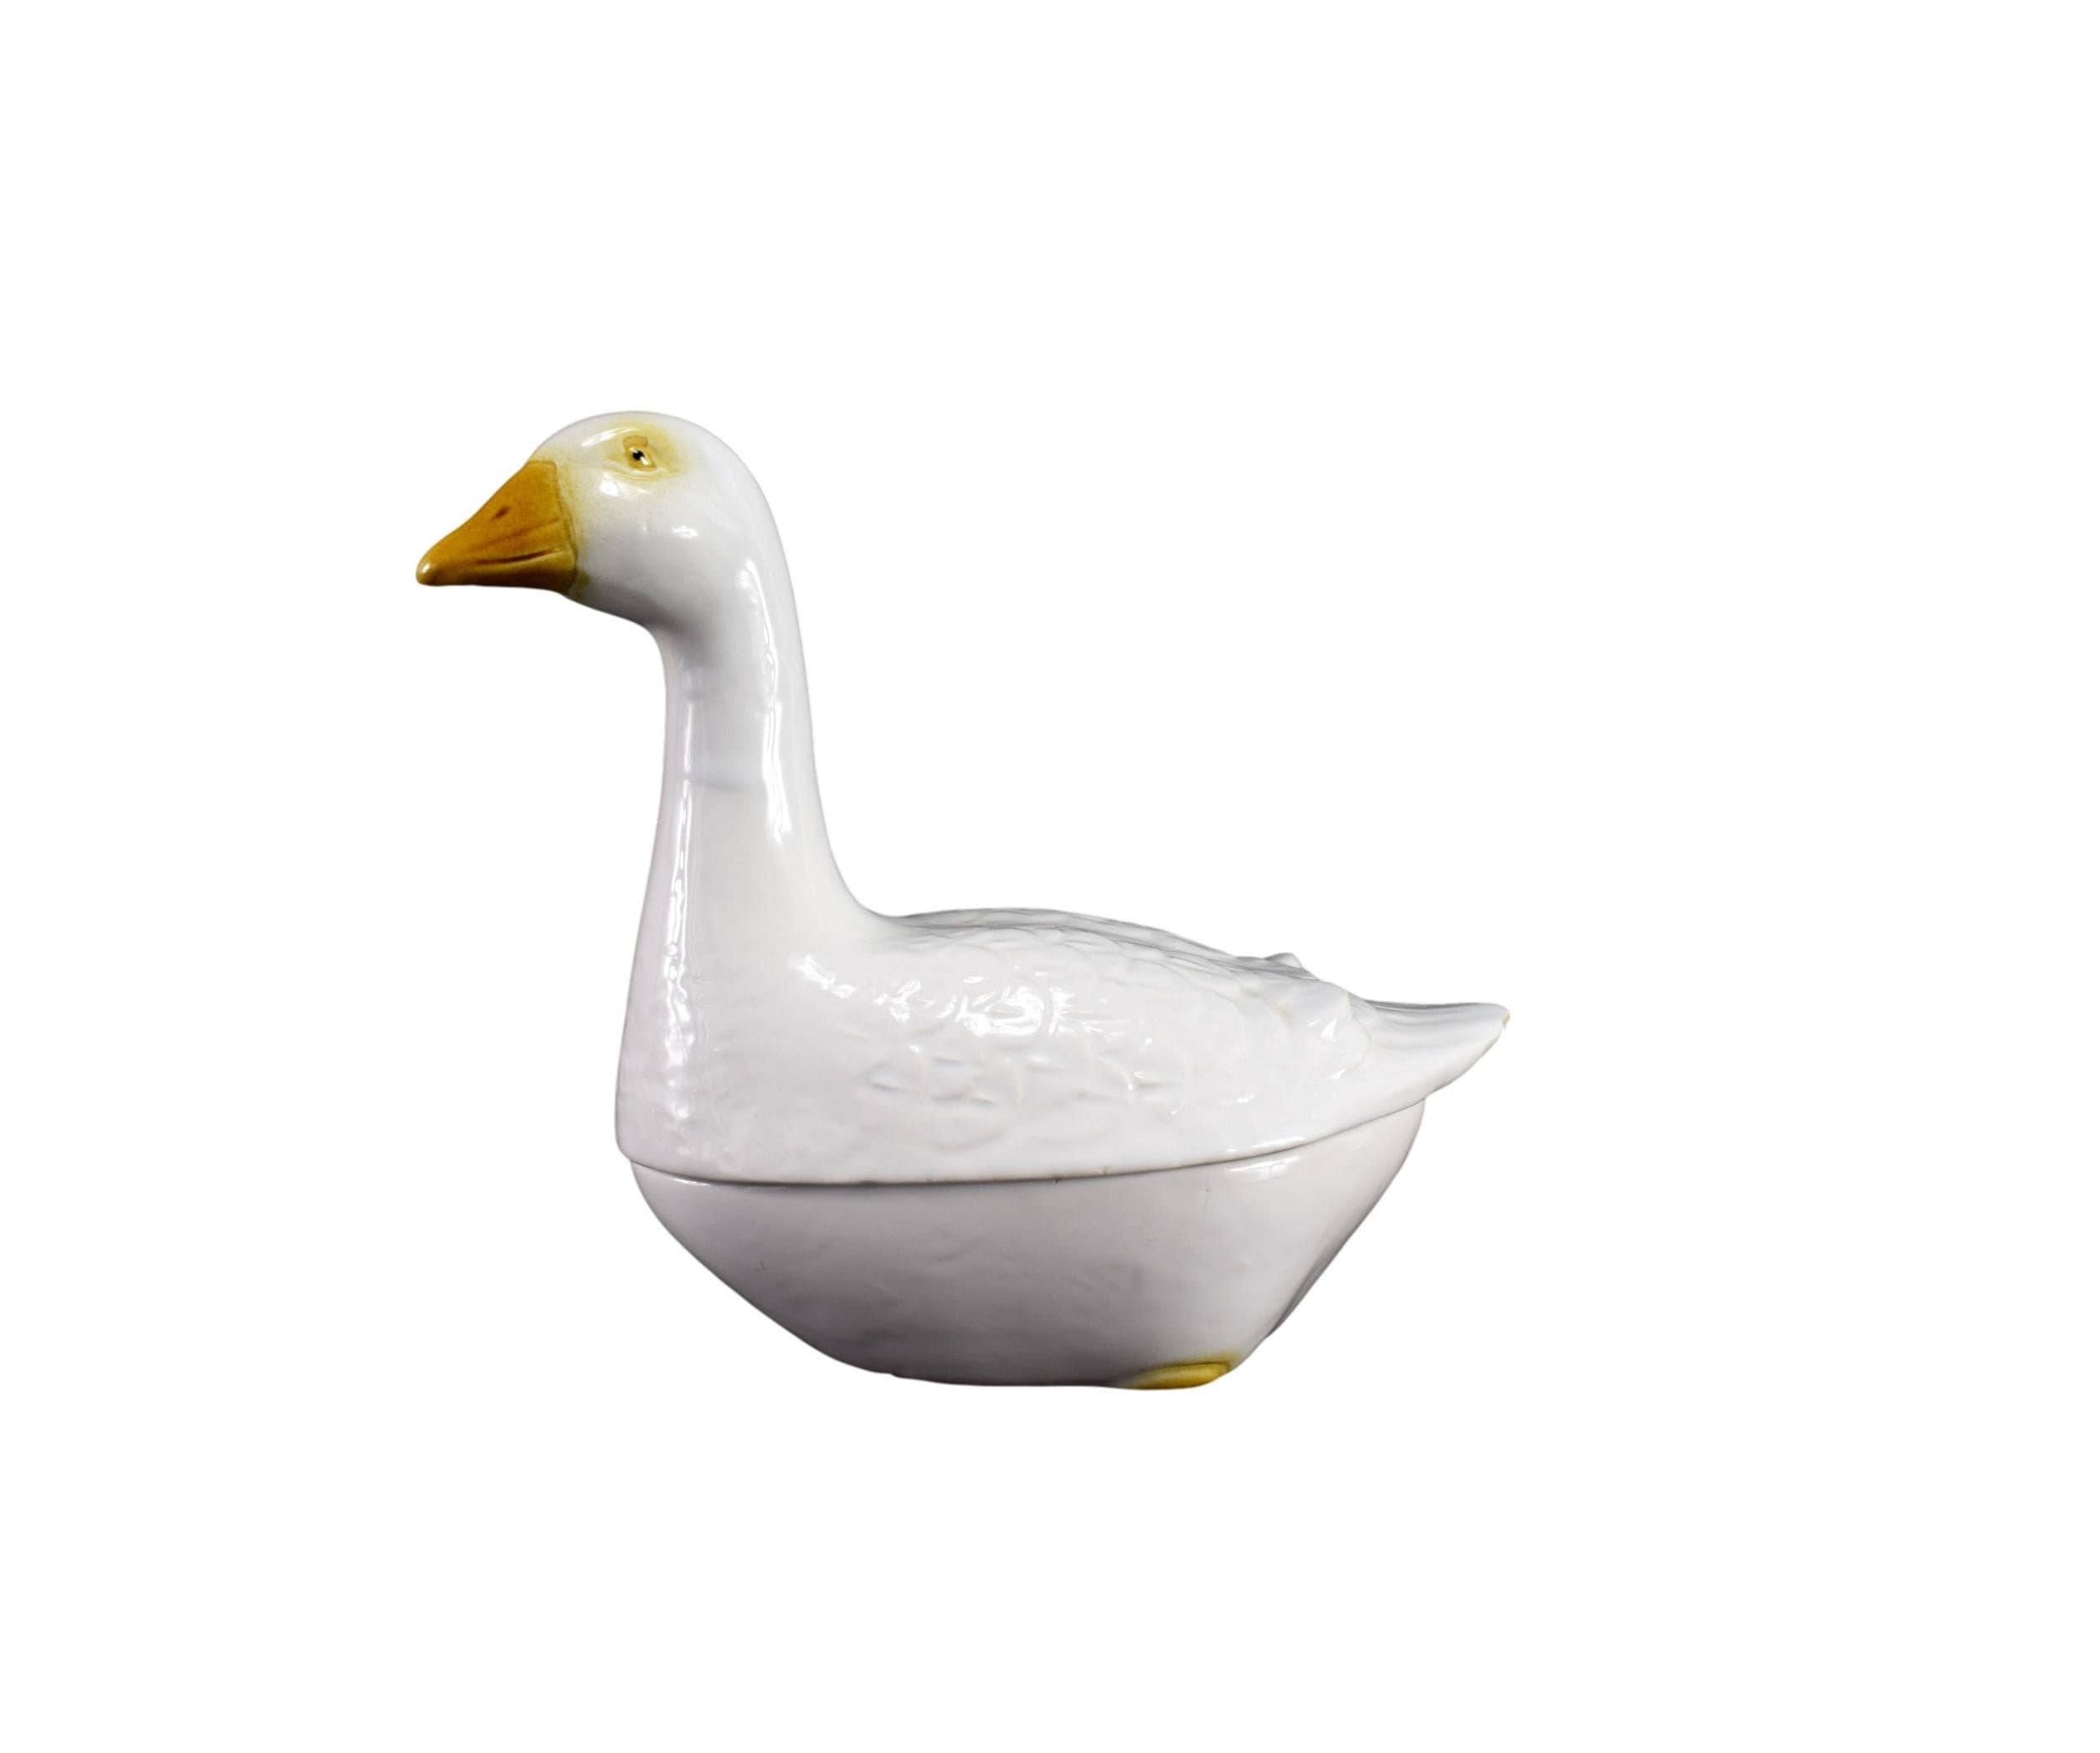 Authentic Français White Gosling Goose Faience Terrine Par Michel Caugant Foie Gras Dish